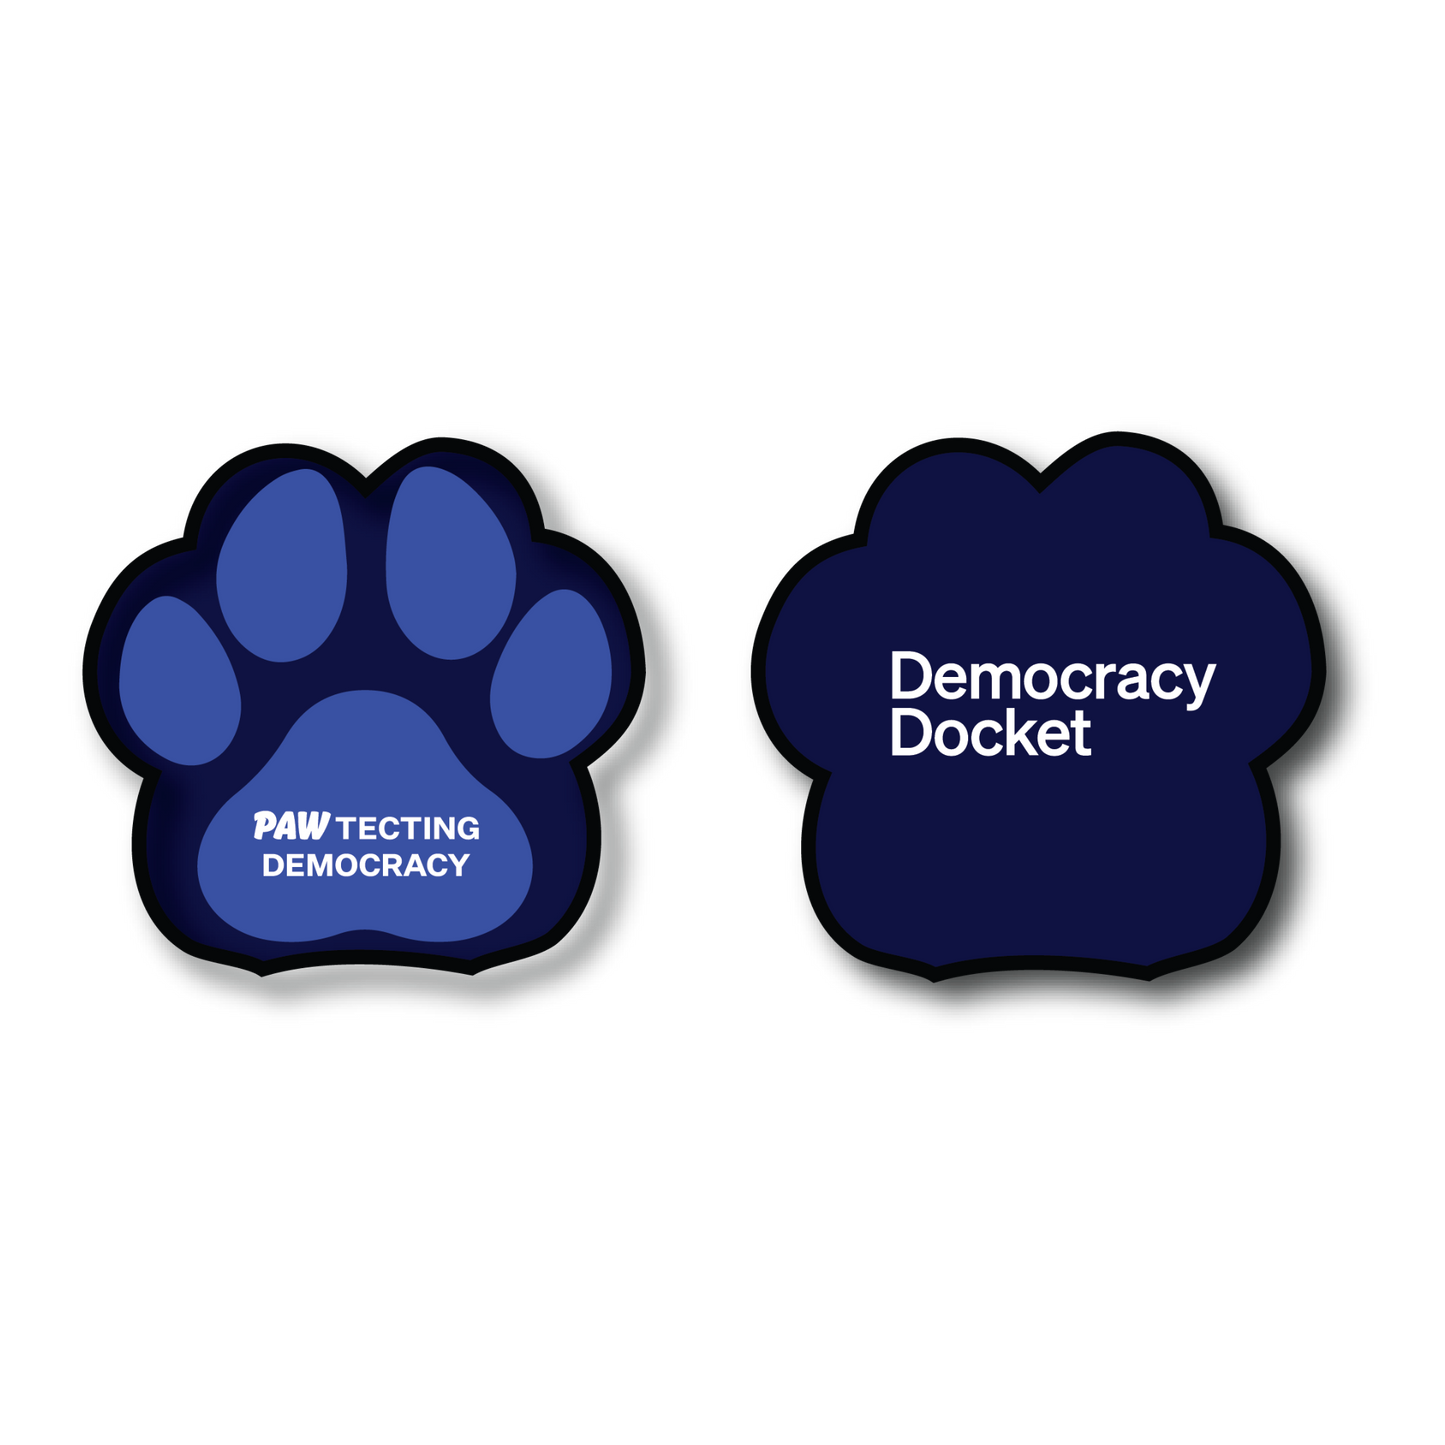 Pawtecting Democracy Dog Toy